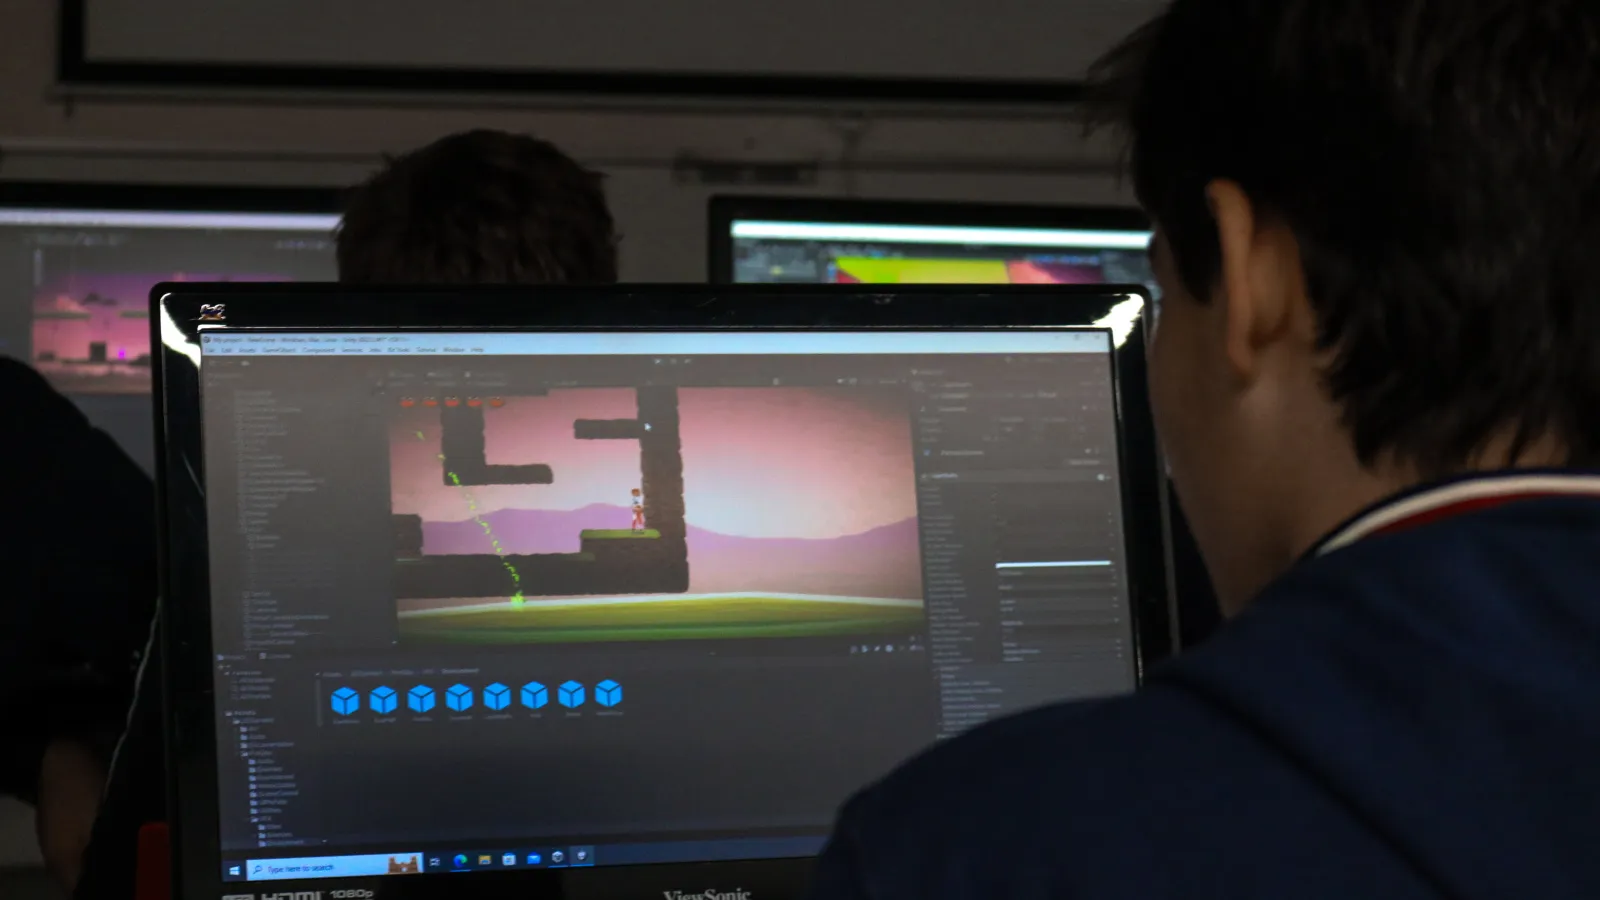 La pantalla muestra un fotograma del videojuego que el estudiante está desarrollando. Se ve un personaje y plataformas.